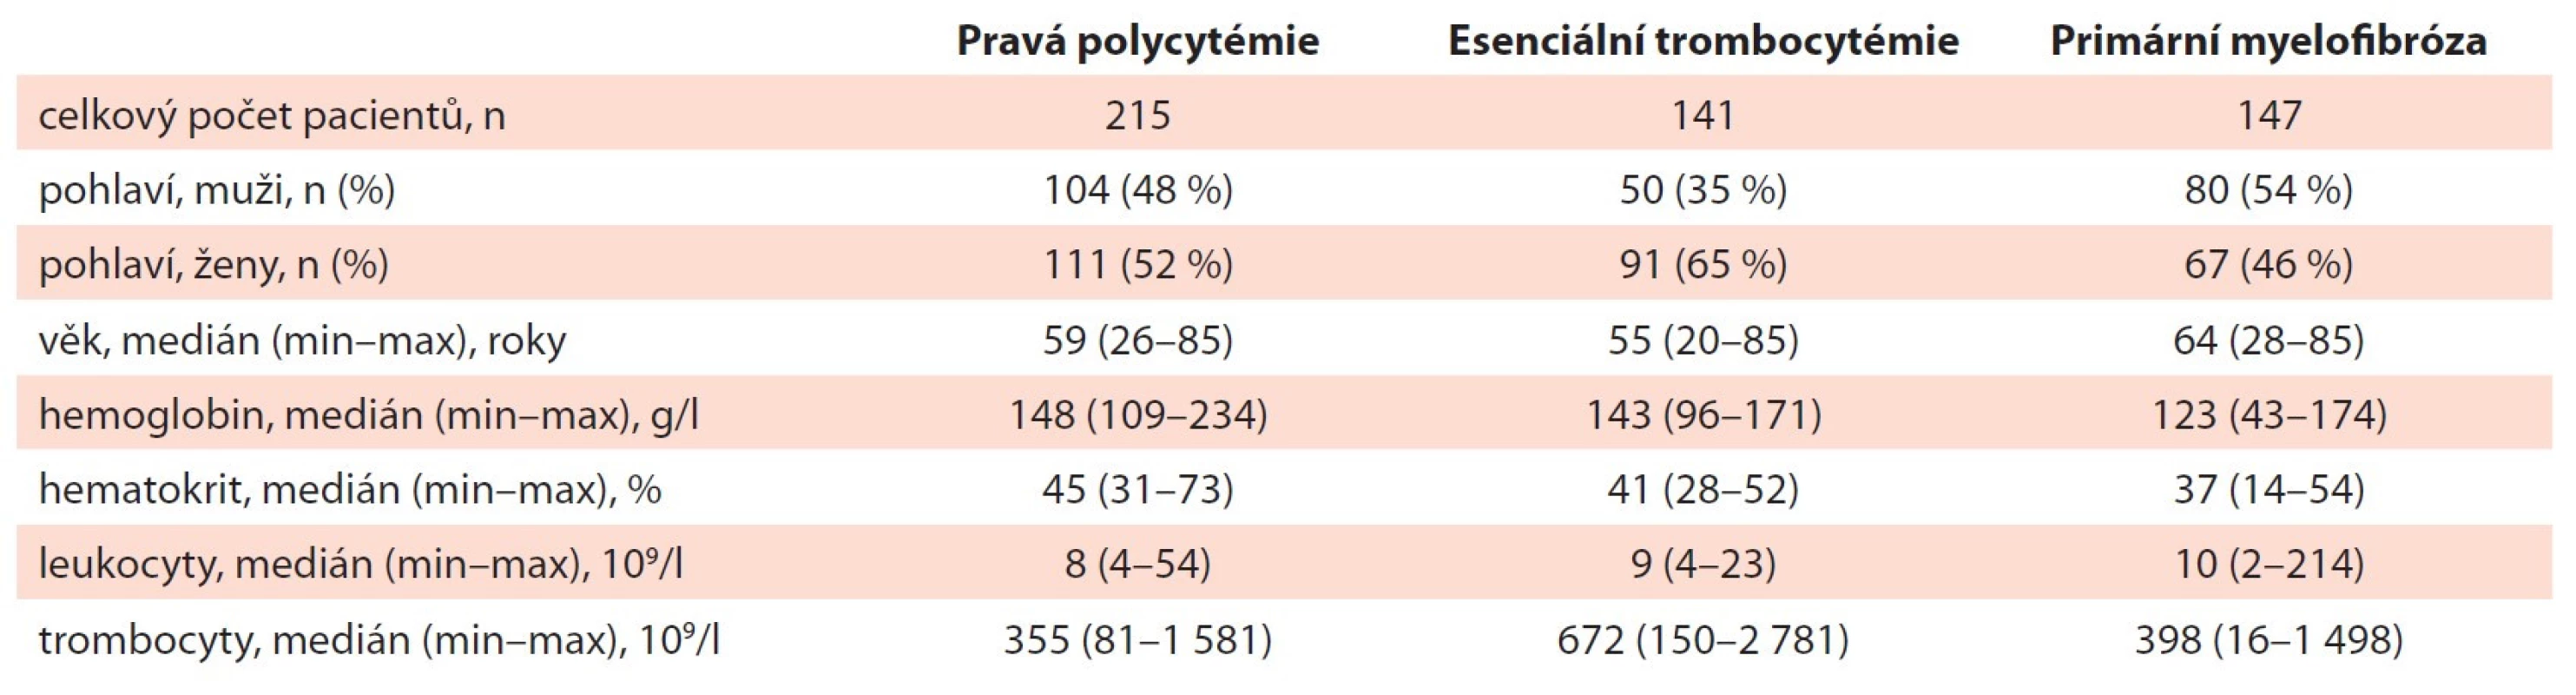 Základní charakteristika souboru pacientů s PV, ET a PMF v době diagnózy (n = 641).